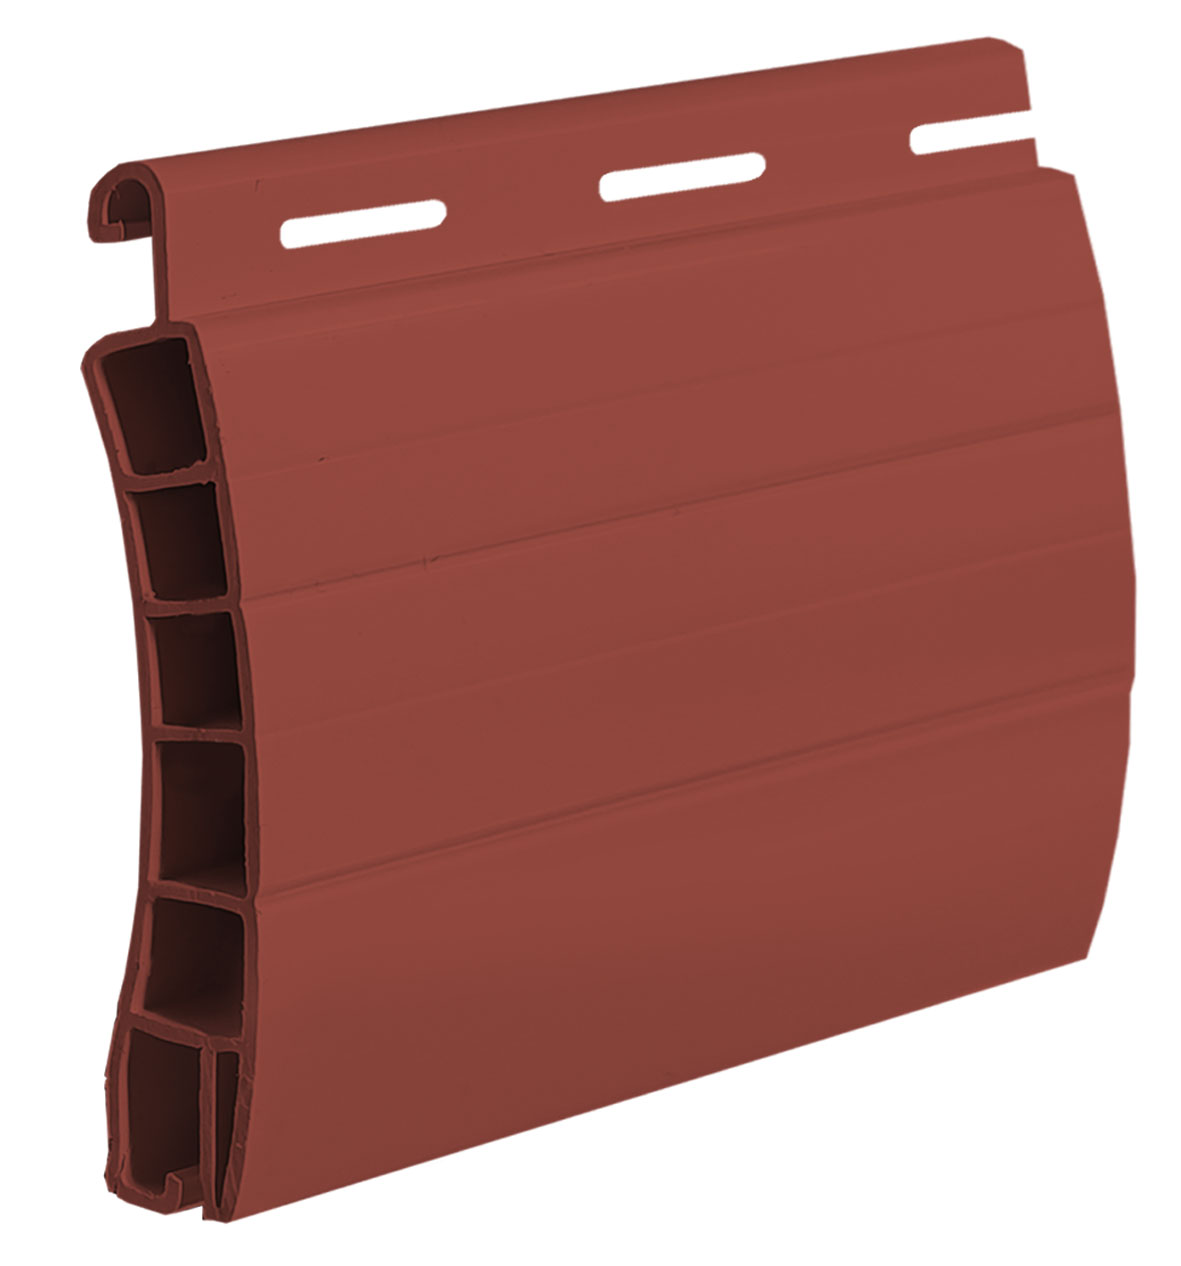  10 Rosso Mattone - Avvolgibile PVC - FIBREGLASS